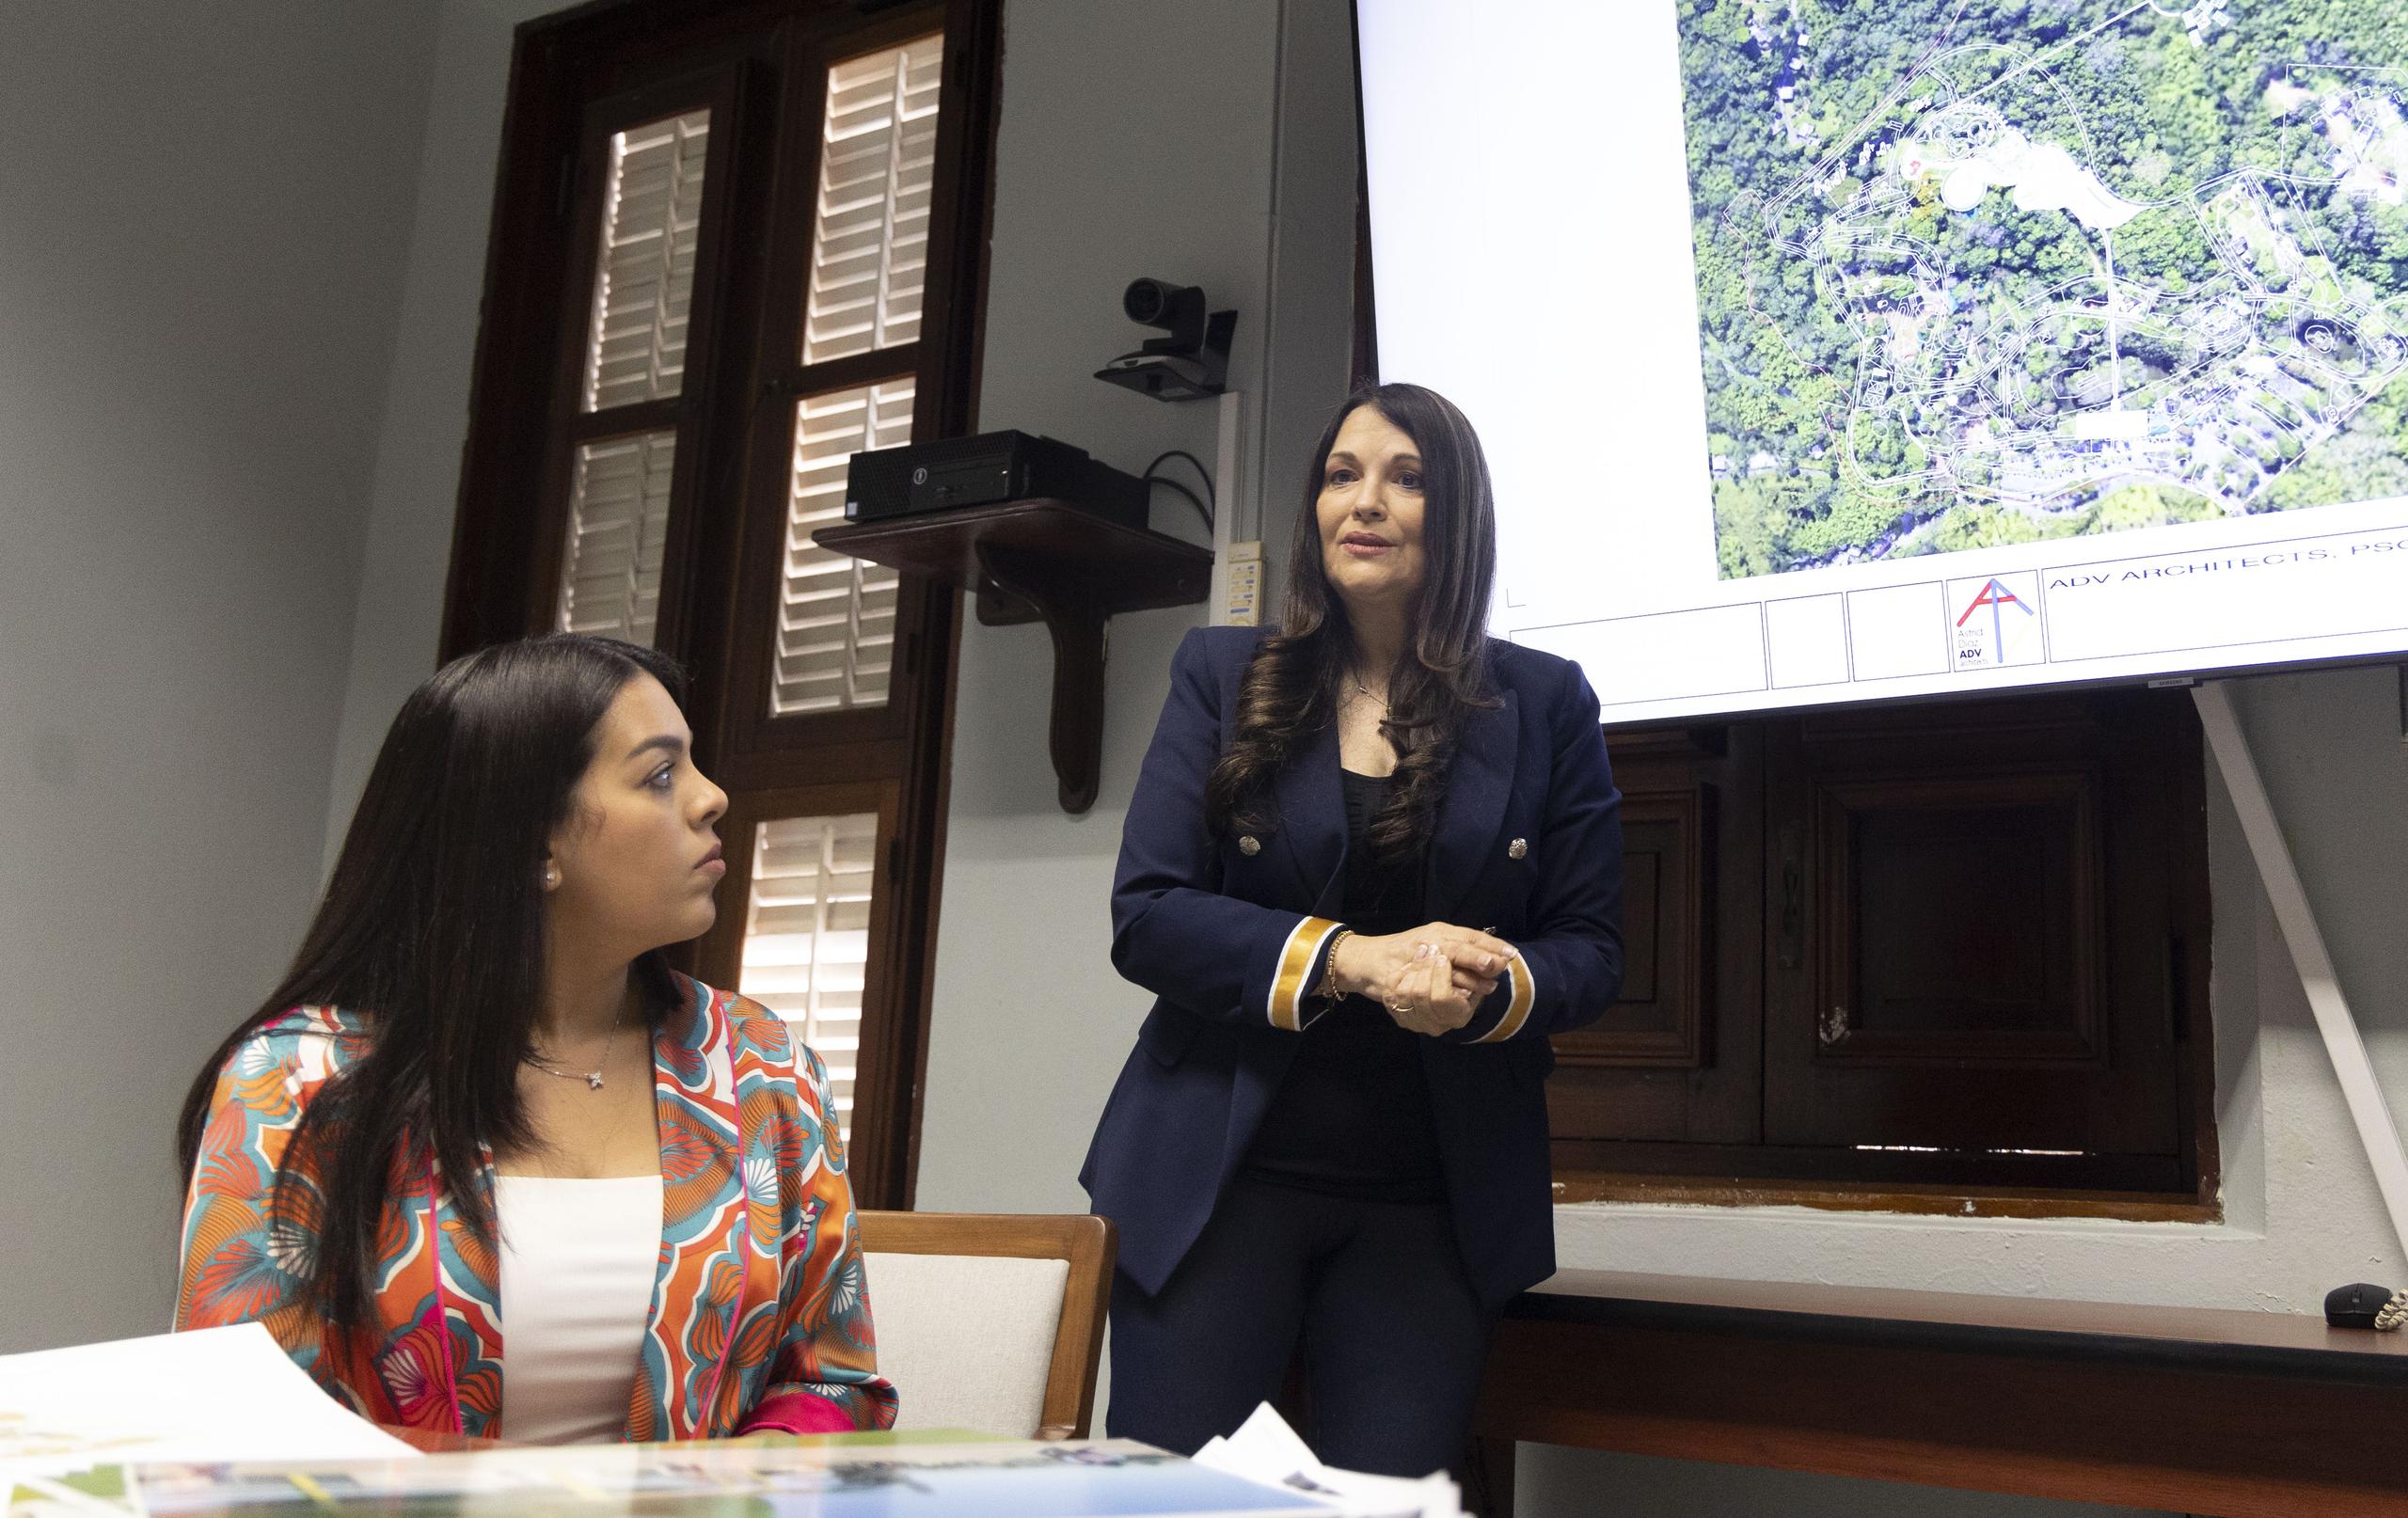 DRNA espera por aprobación de FEMA para convertir Zoológico de Mayagüez a un EcoJardín. Pero, FEMA dice que la agencia no ha solicitado este proyecto.